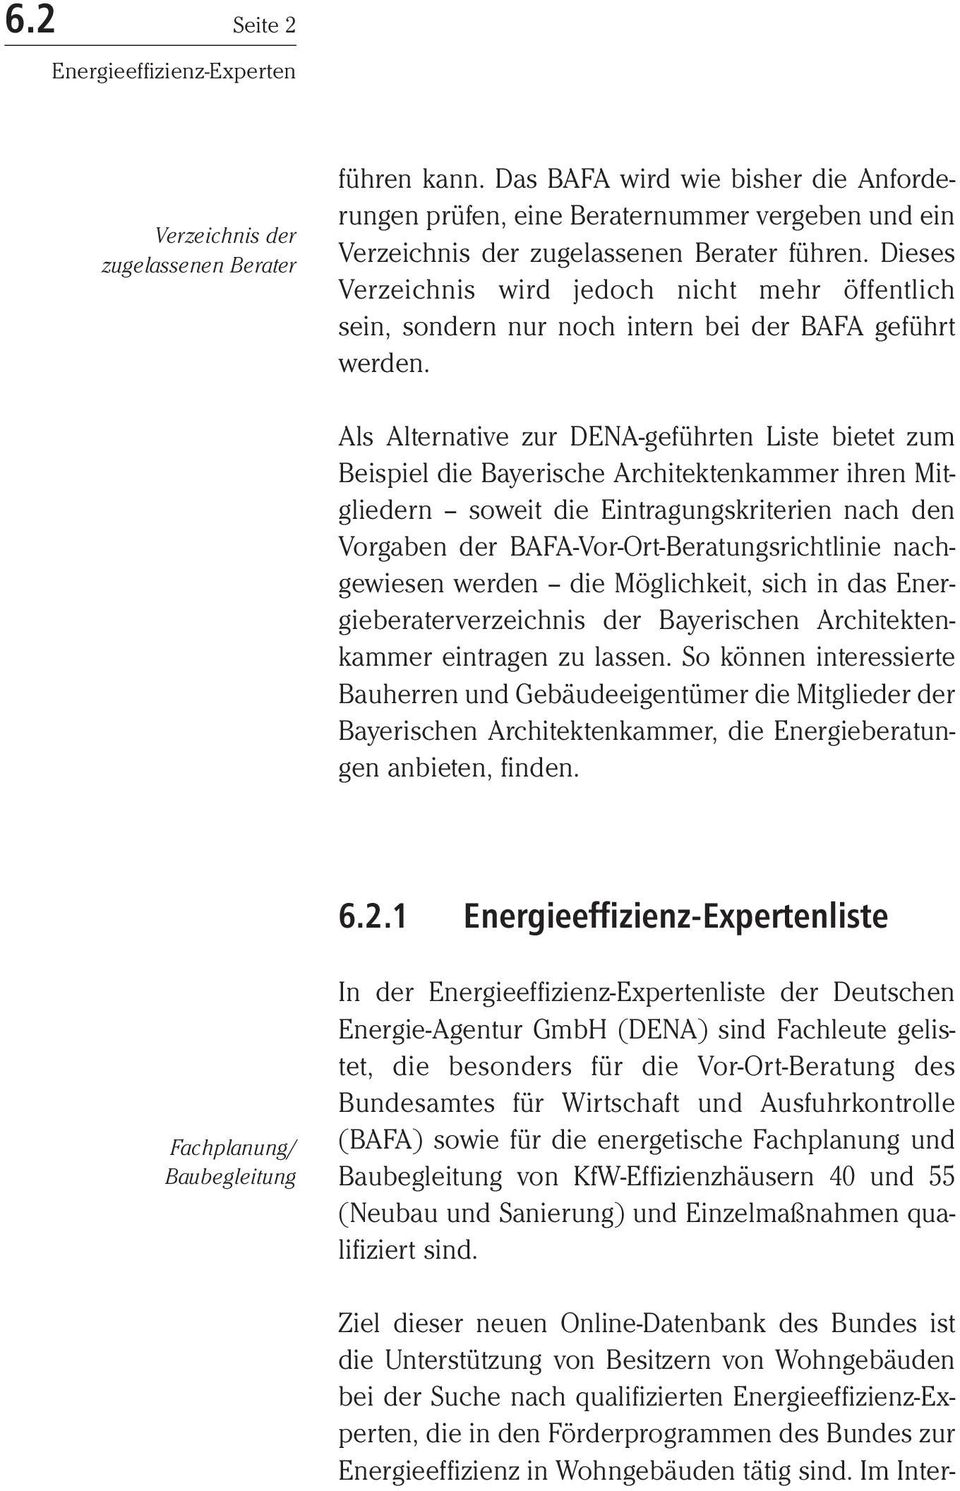 Als Alternative zur DENA-geführten Liste bietet zum Beispiel die Bayerische Architektenkammer ihren Mitgliedern soweit die Eintragungskriterien nach den Vorgaben der BAFA-Vor-Ort-Beratungsrichtlinie